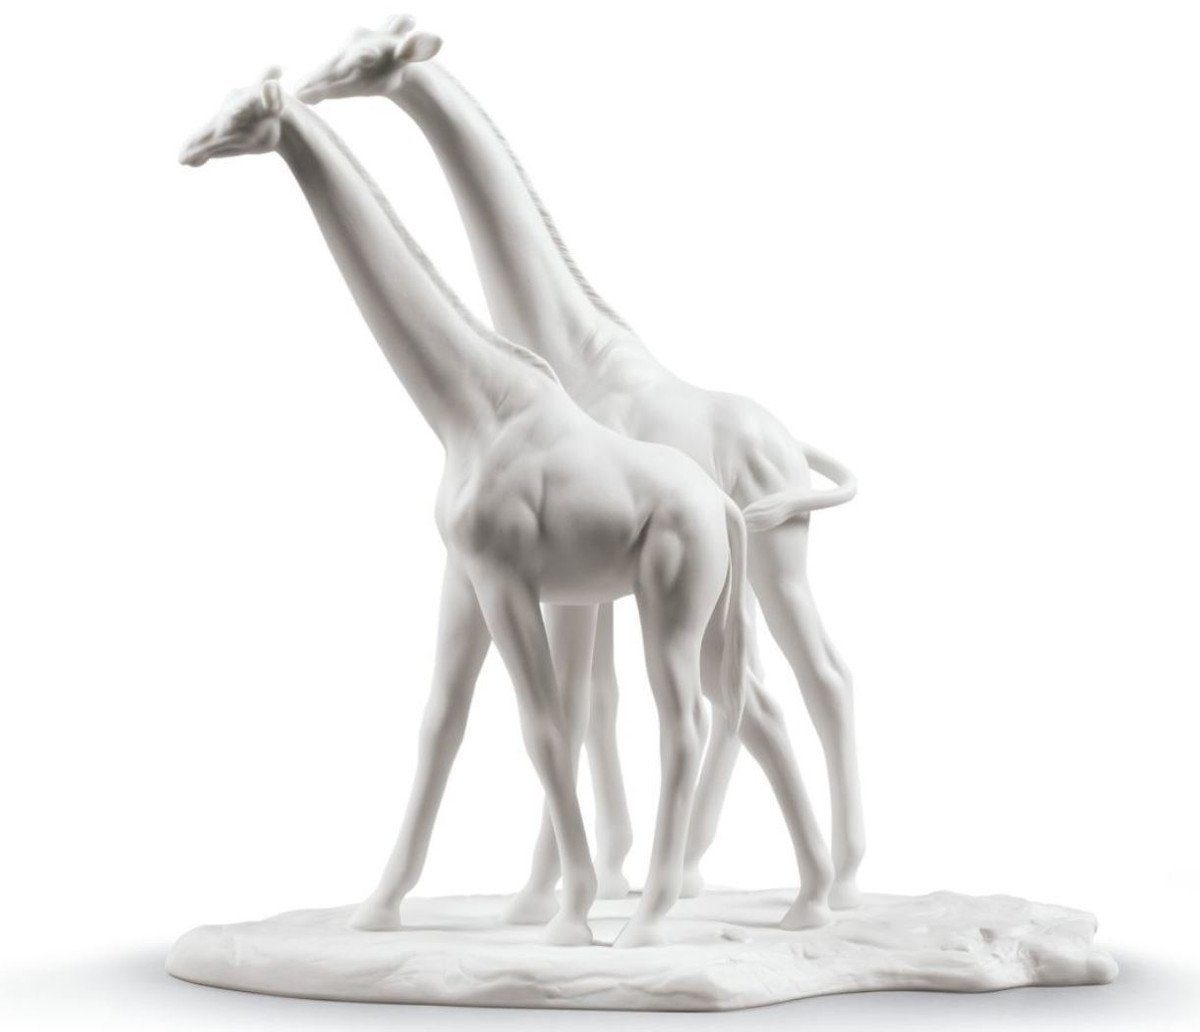 Casa Padrino Dekofigur Casa Padrino Luxus Giraffen Figur / Skulptur Weiß 28 x H. 27 cm - Wohnzimmer Dekoration aus Feinstem Spanischen Porzellan